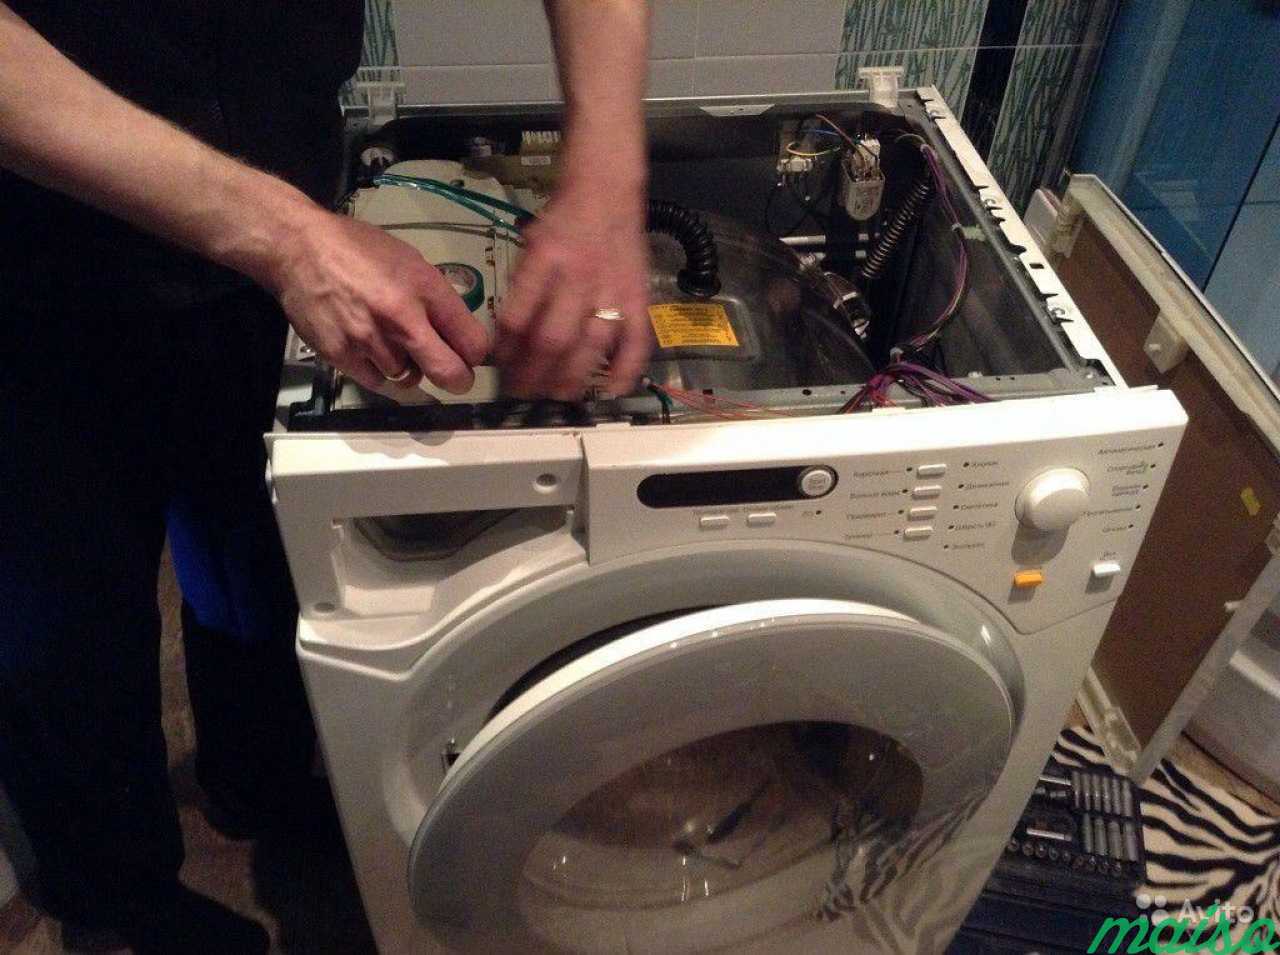 Ремонт стиральных машин в Москве. Фото 2